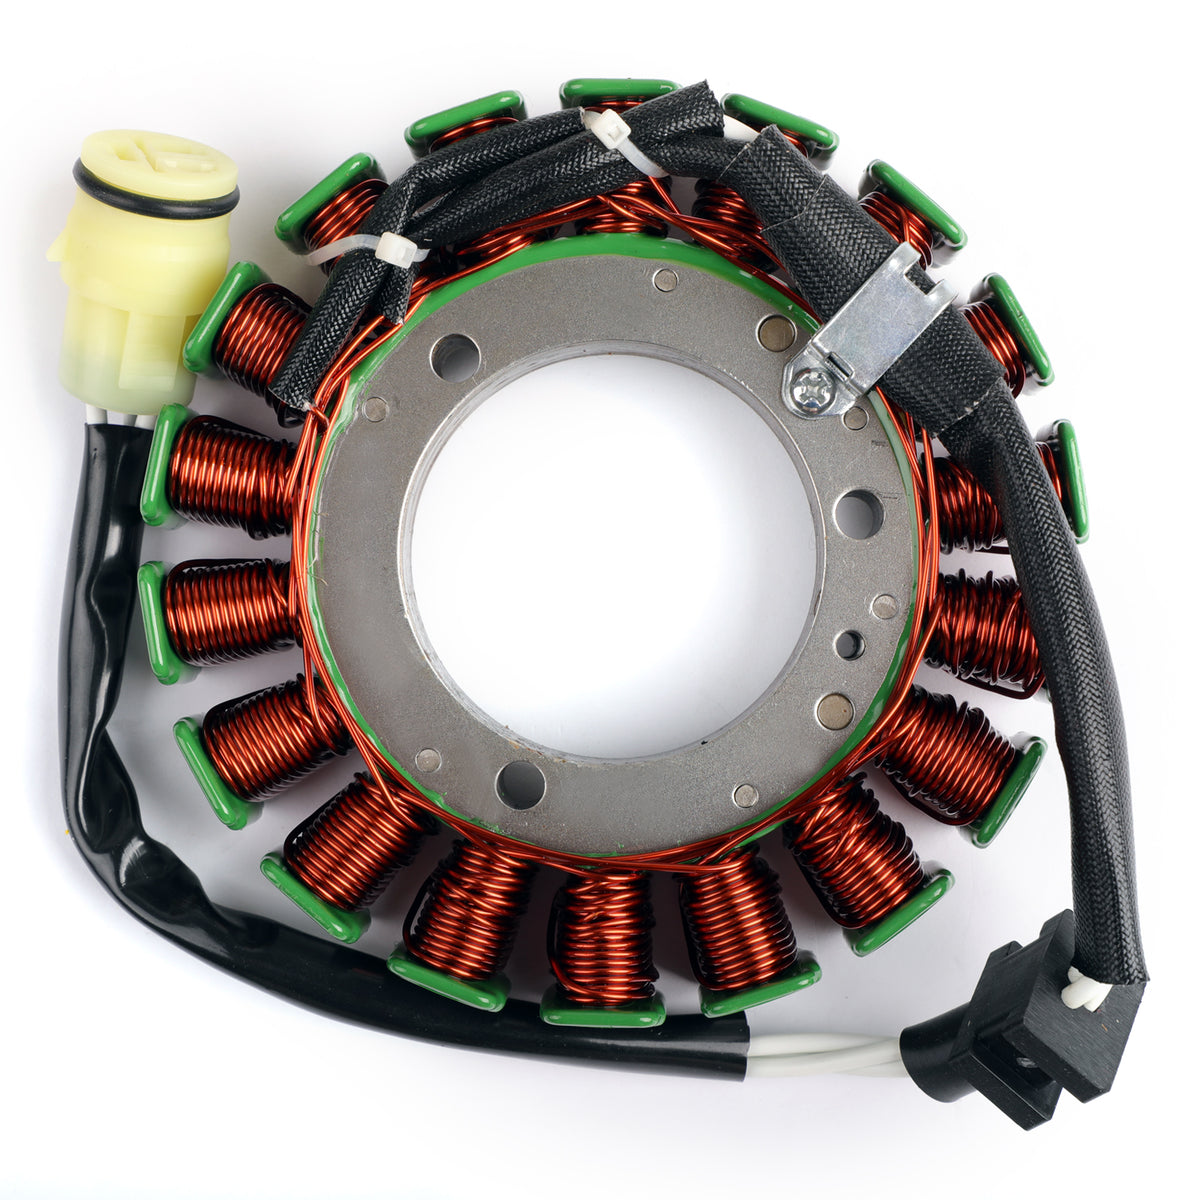 Generatore statore adatto per Kawasaki Vulcan 1500 VN1500 Drifter 99-00 21003-1350 tramite fedex